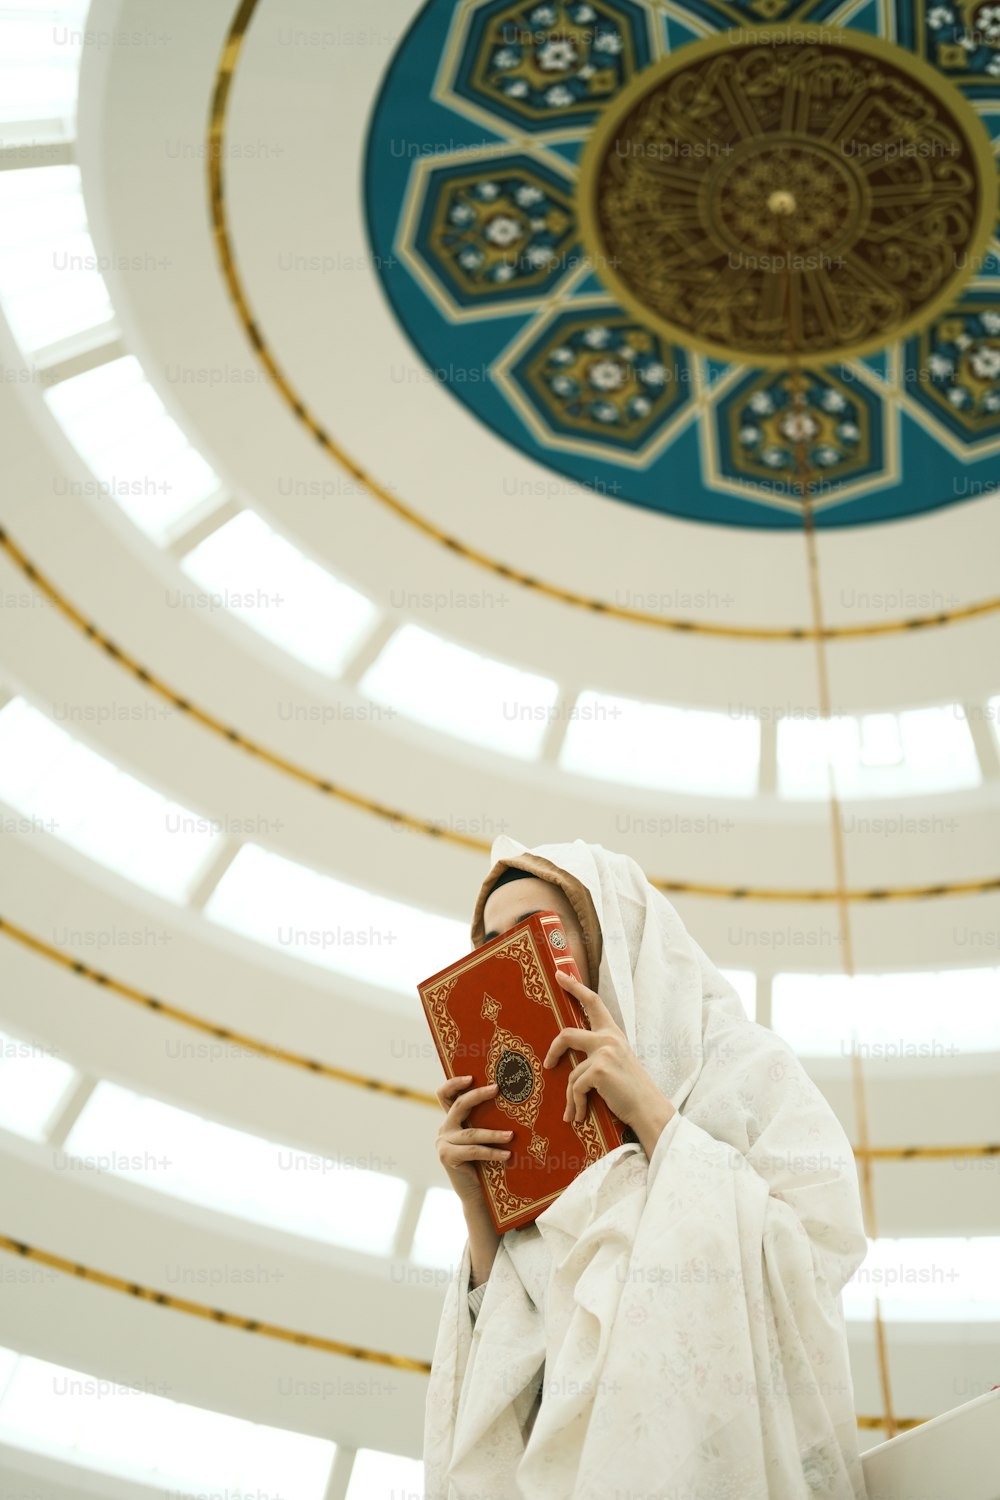 Eine Frau in einem weißen Gewand hält ein rotes Buch in der Hand